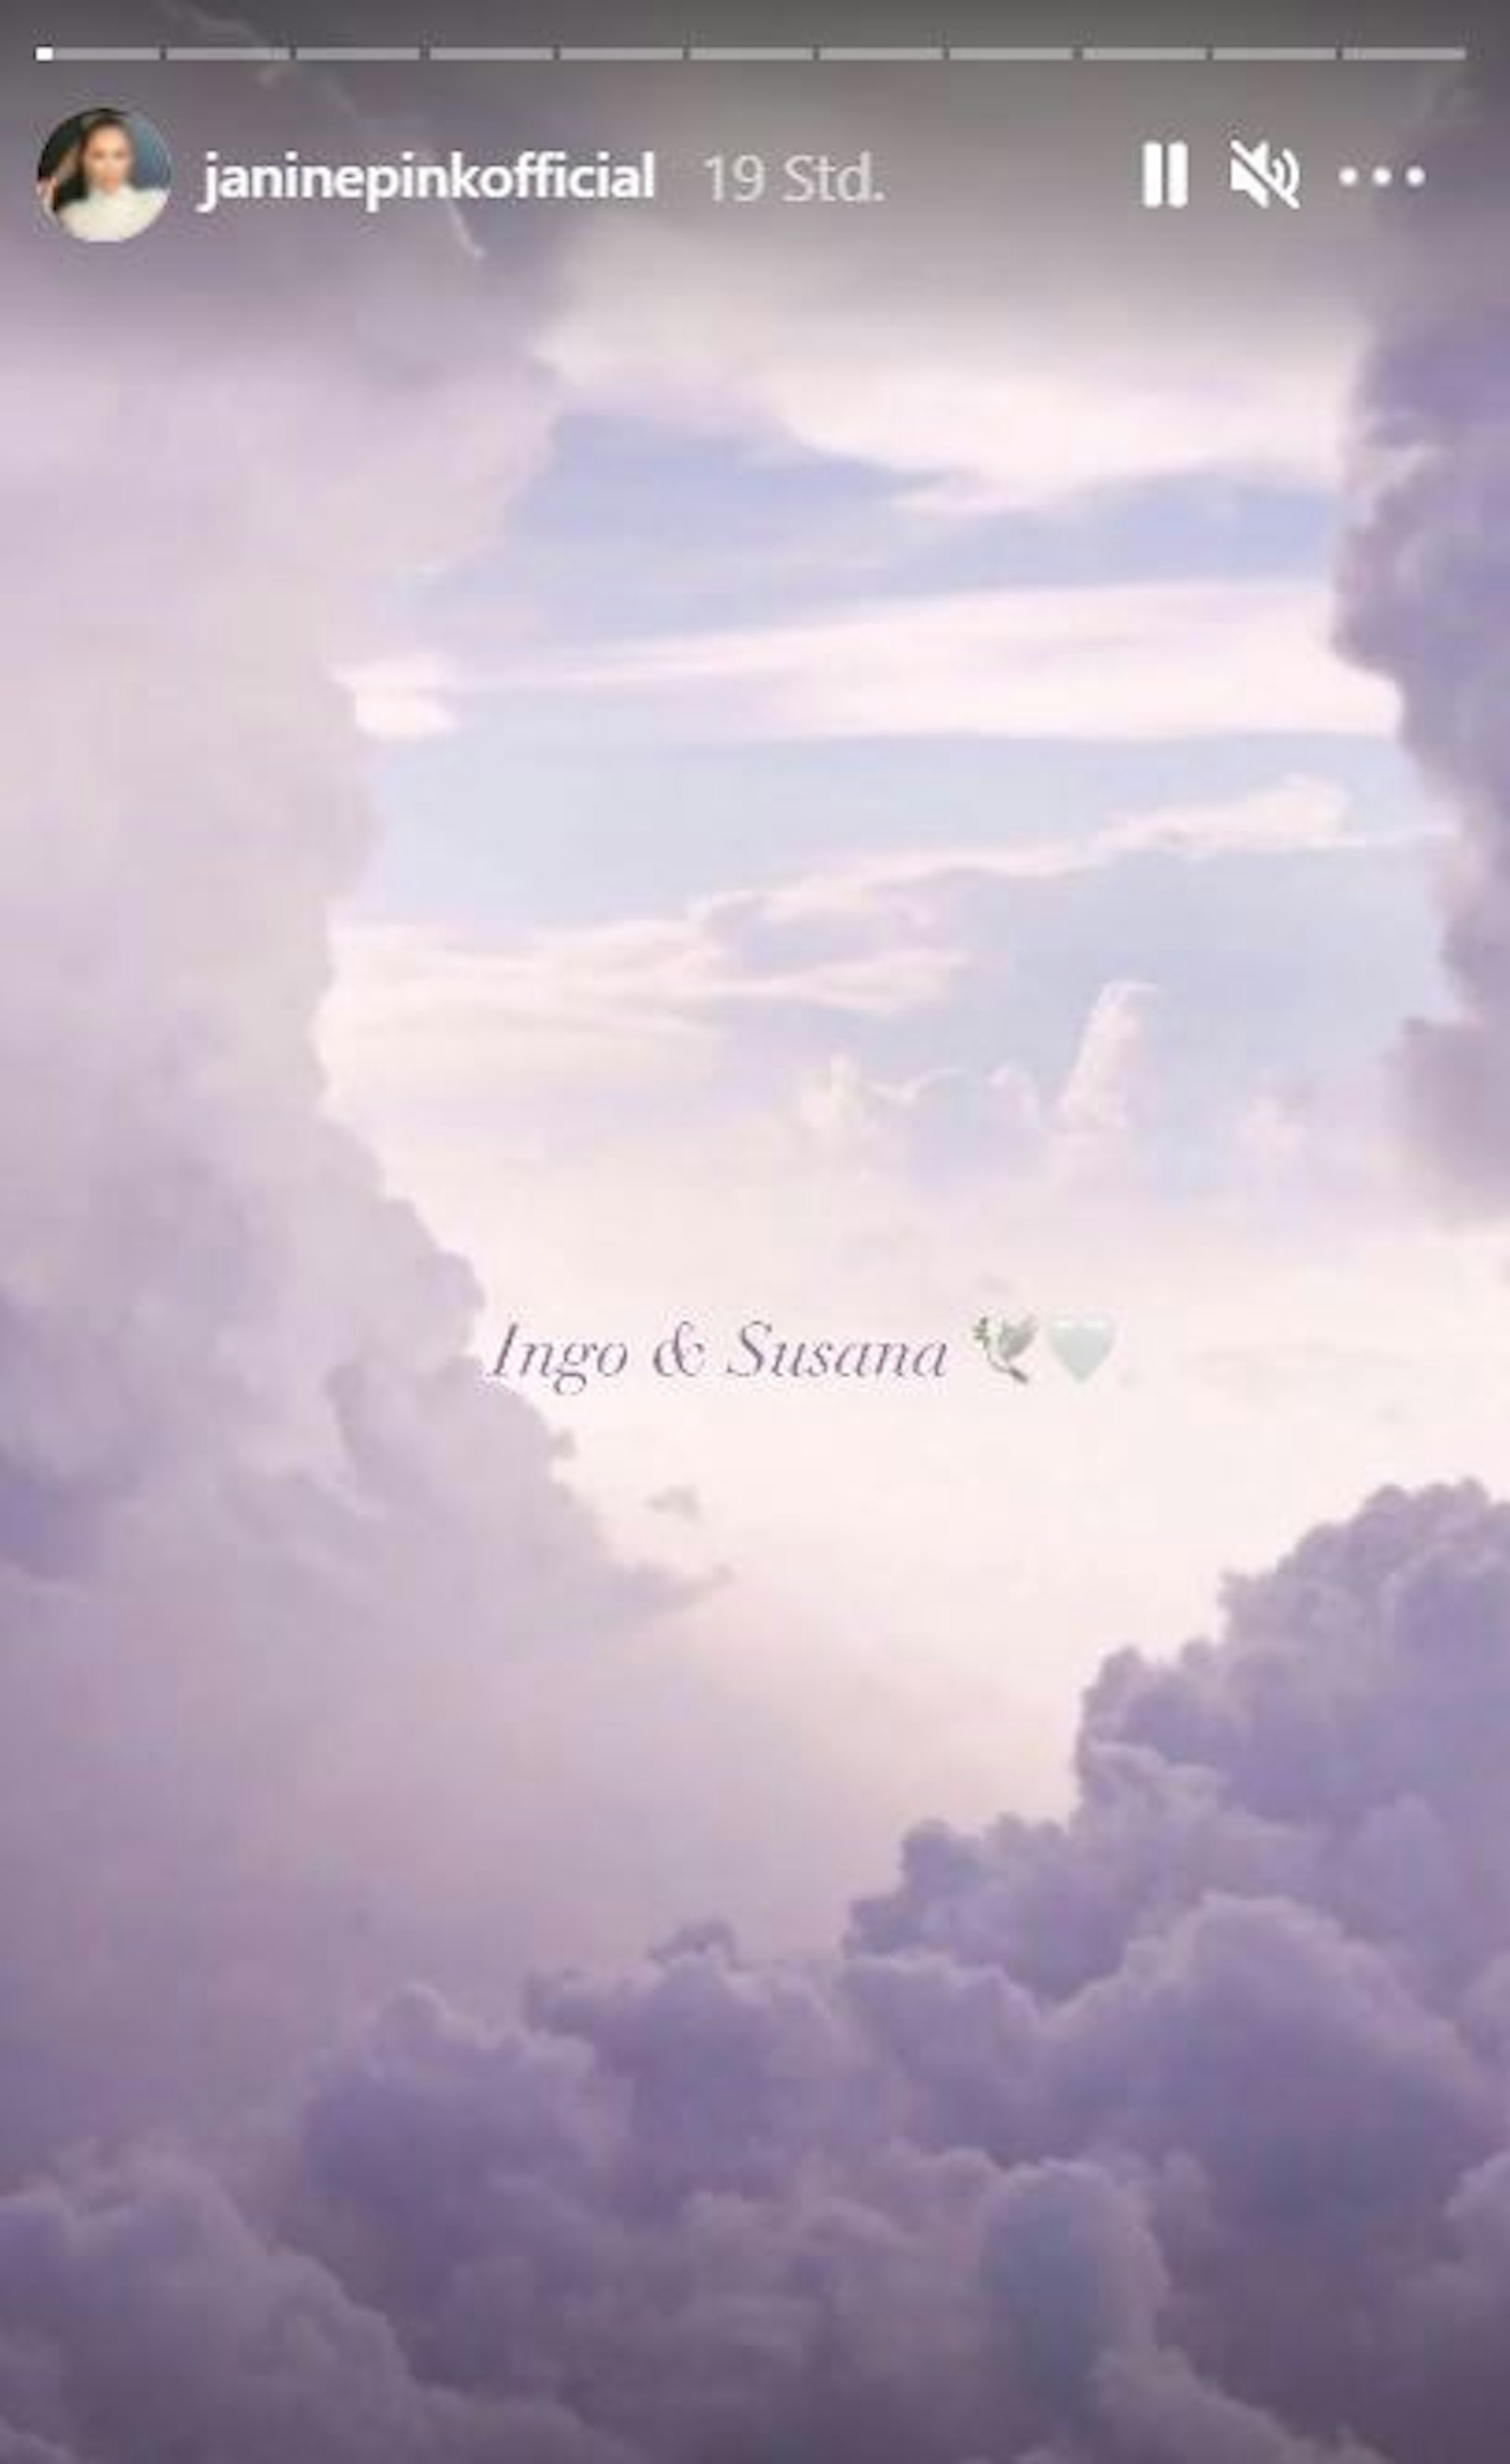 Auf einen Bild von Wolken stehen die Namen Ingo & Suzana. JaninePink postete das Bild in ihrer Insta-Story vom 16. August 2021 im Gedenken an Ingo und Suzana Kantorek.